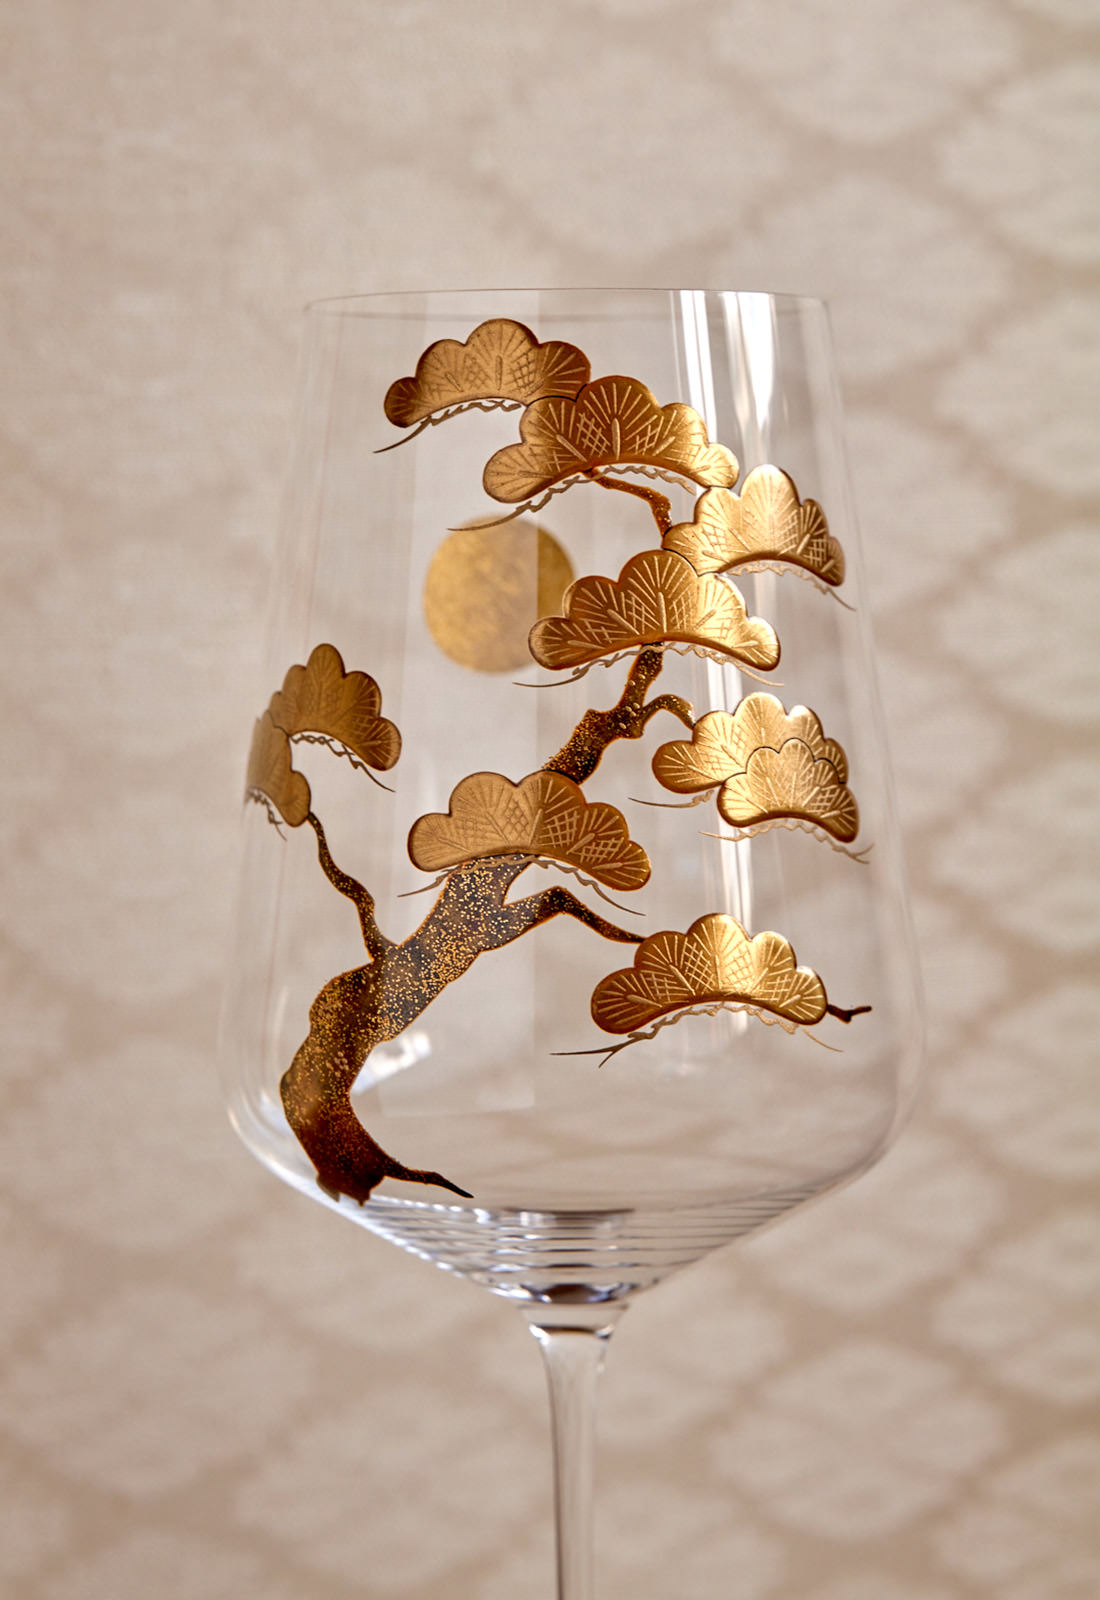 高蒔絵で松を立体的に表現したワイングラス。ワインを注ぐと月影がほのかに浮かぶ仕掛けになっている